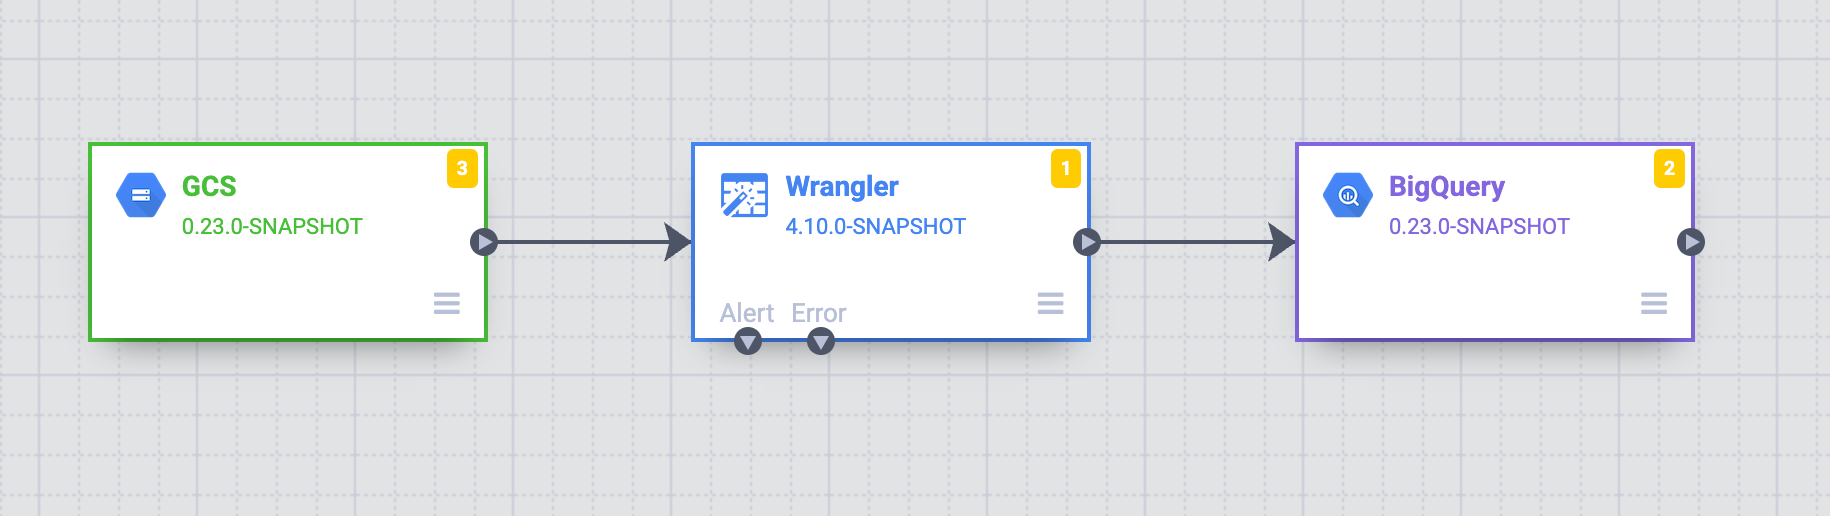 显示 Cloud Storage 来源、Wrangler 转换和 BigQuery 接收器的数据流水线。